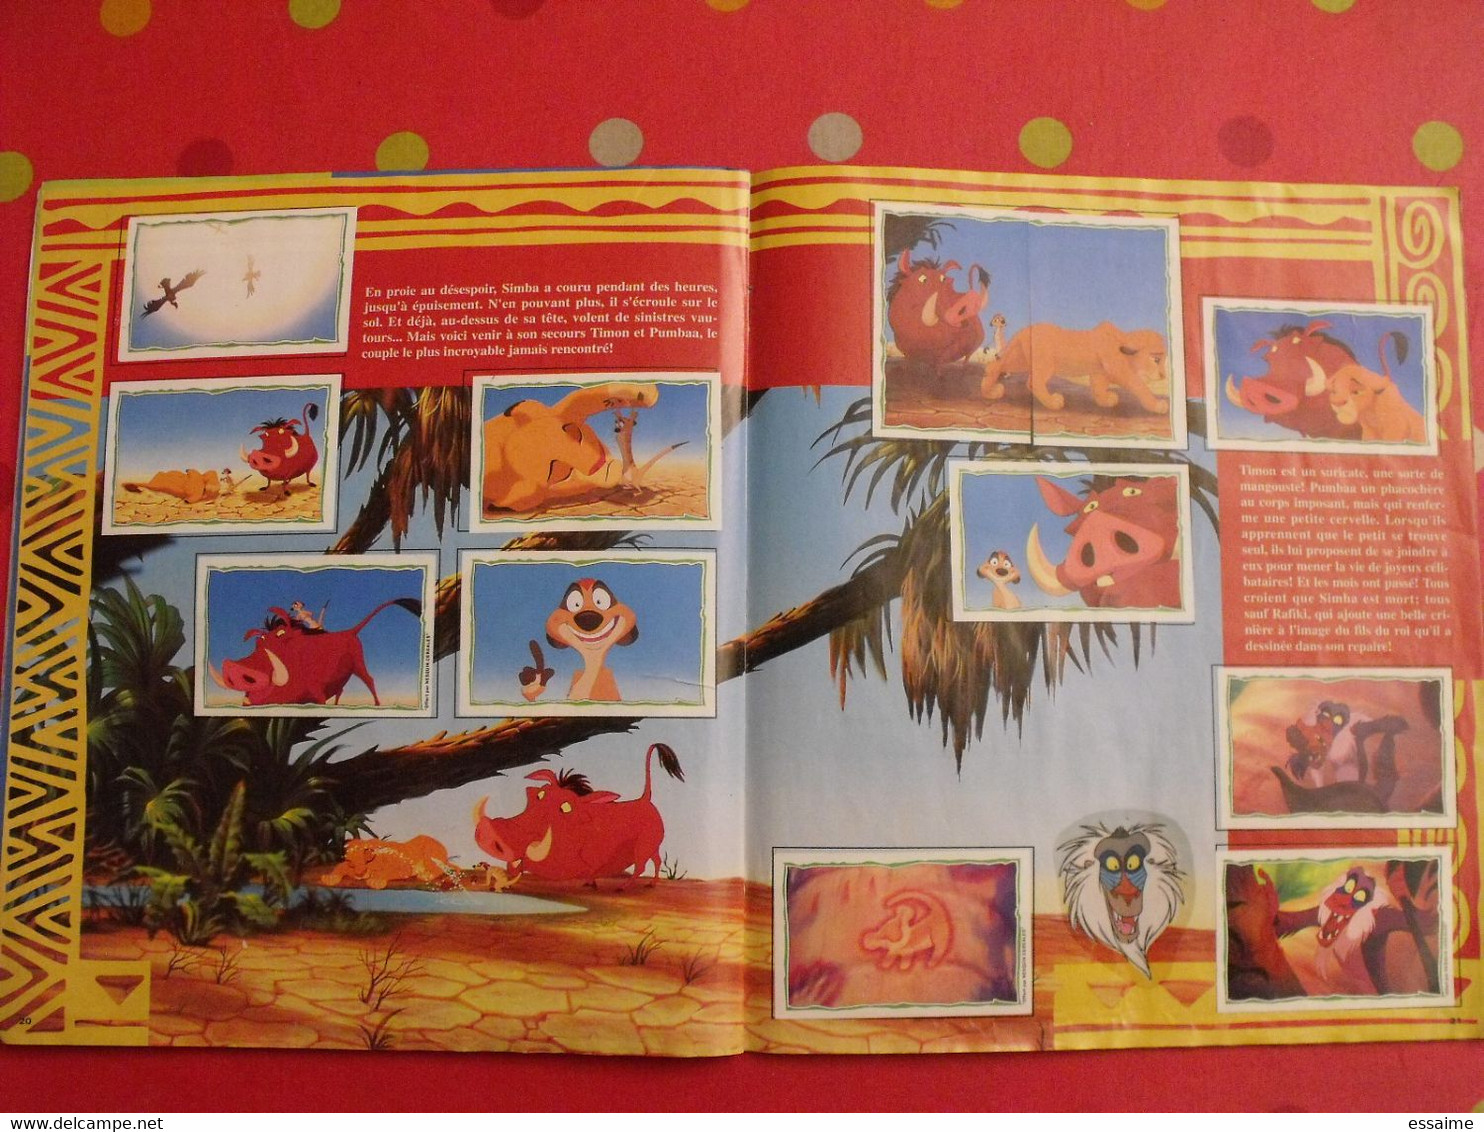 album d'images collées Panini. Le roi Lion. complet (232 images). 1994